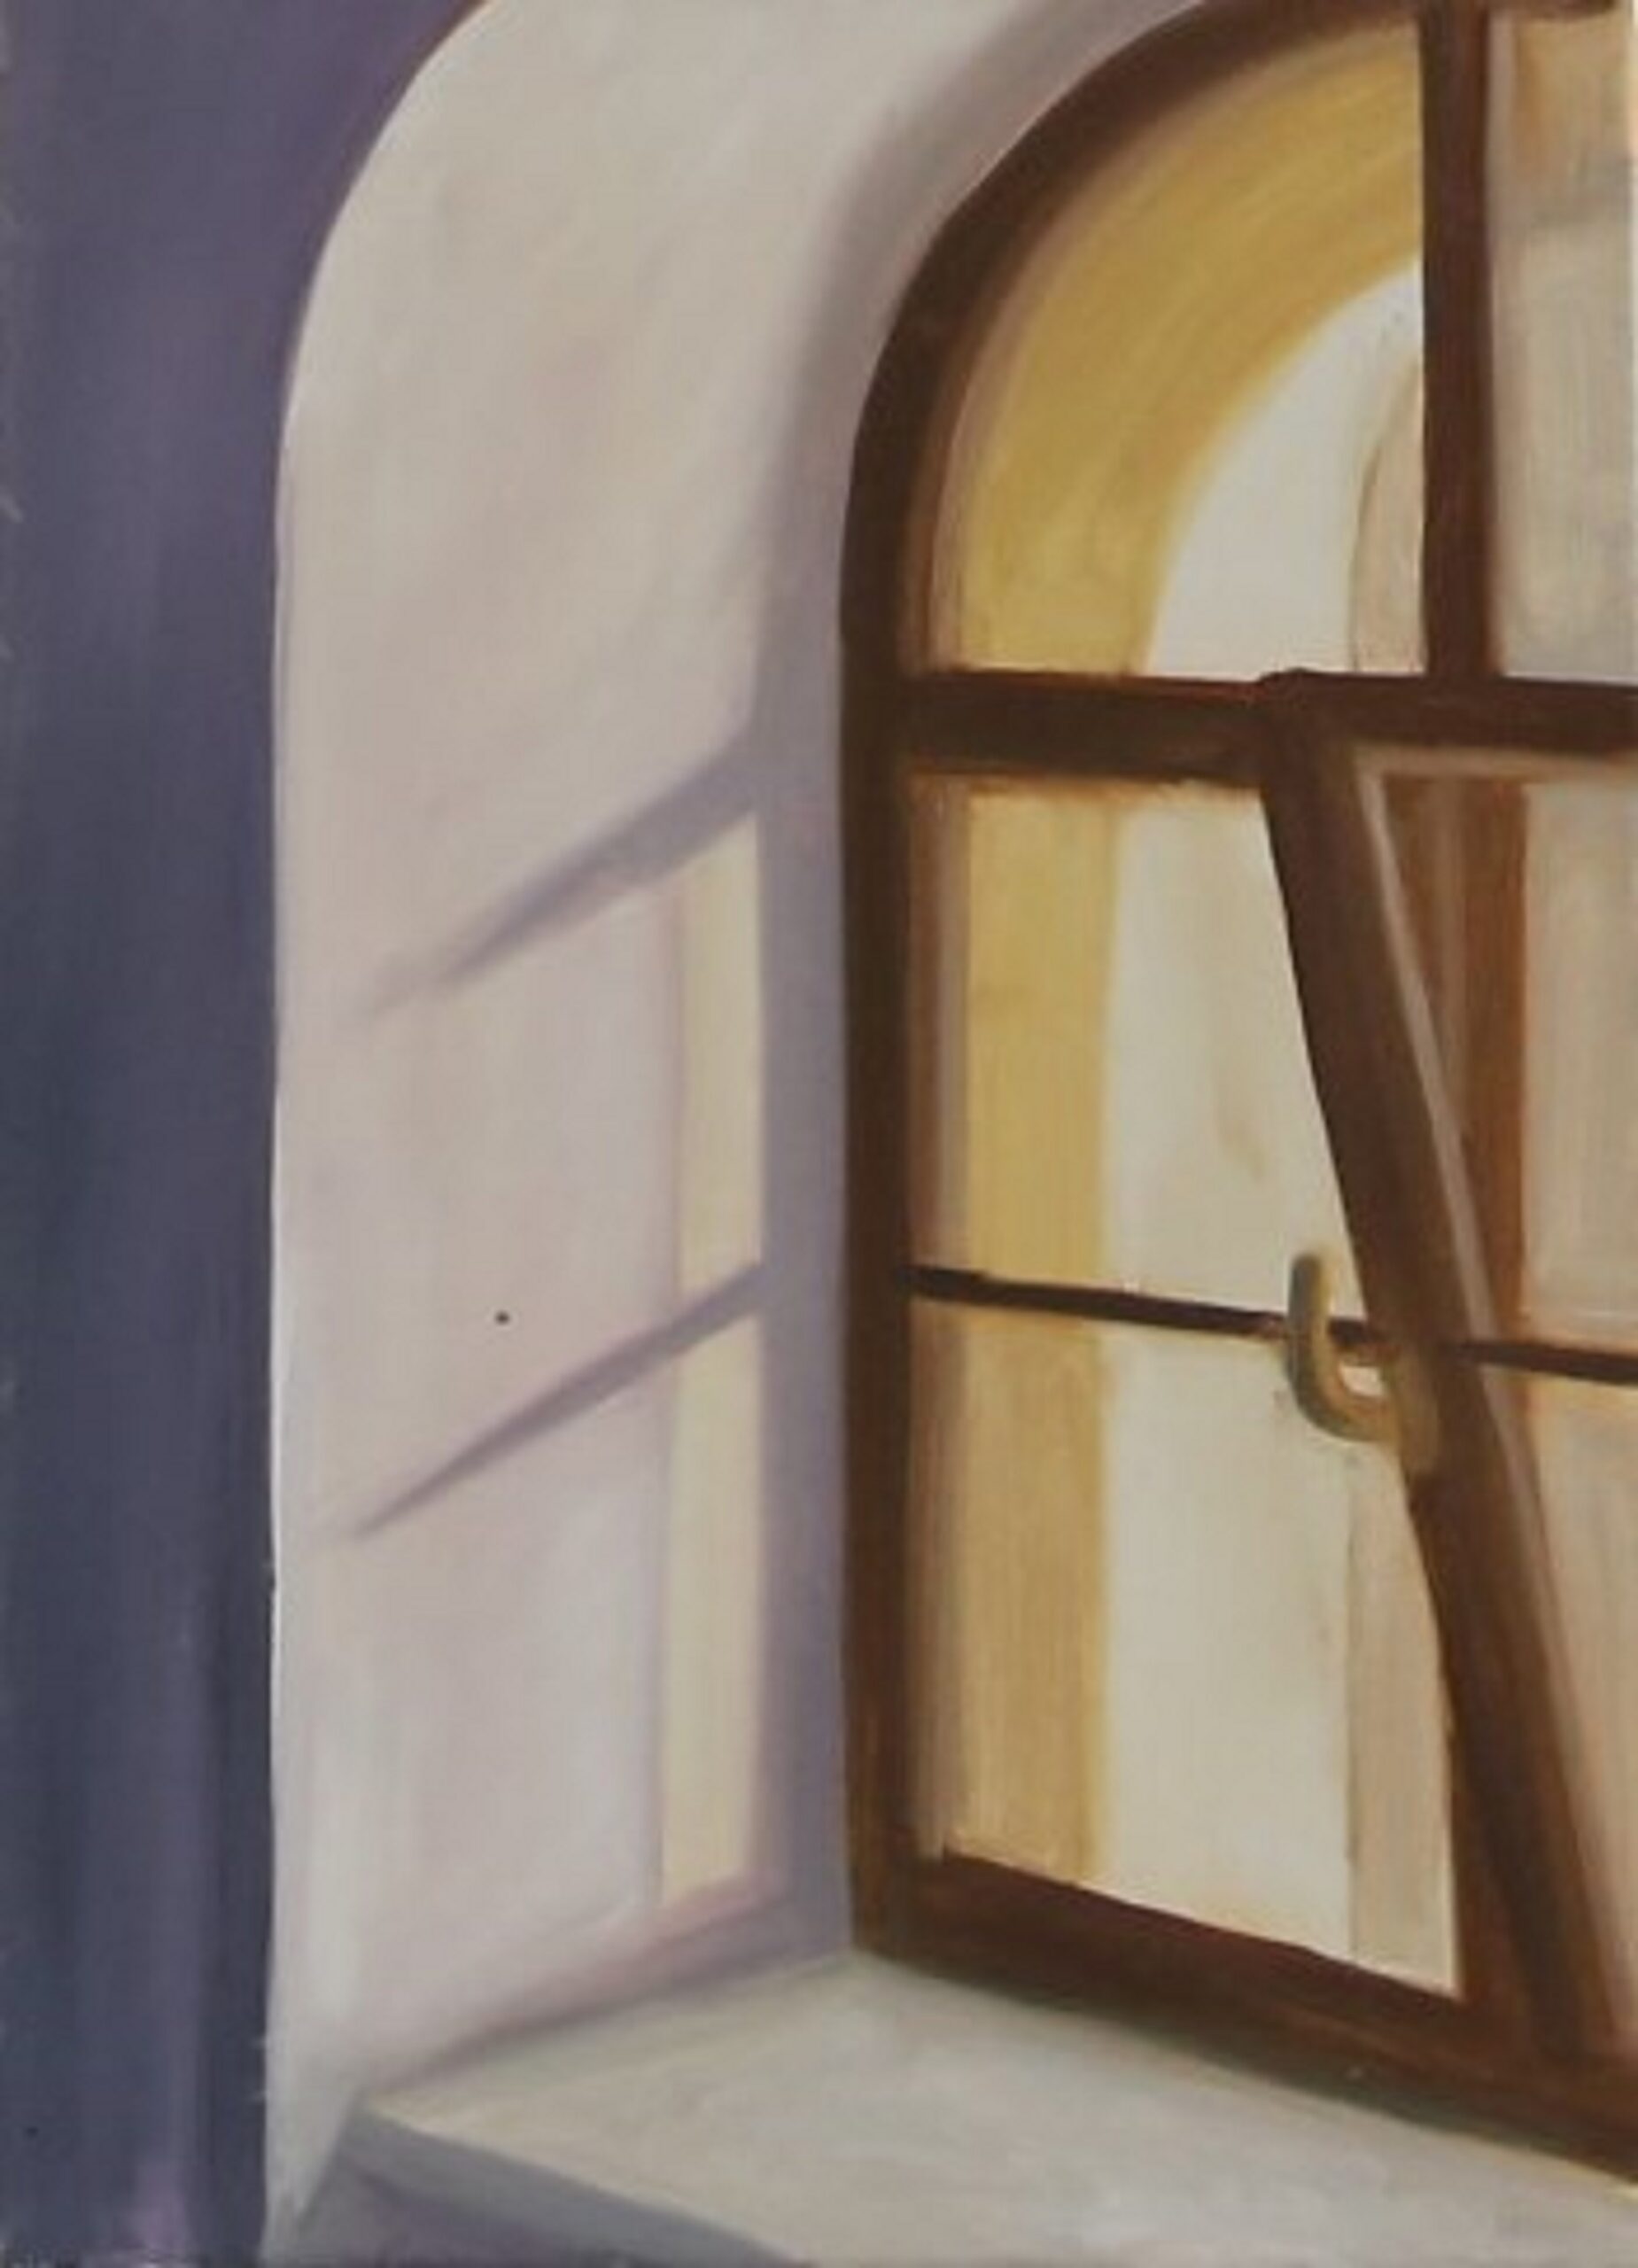 Obraz przedstawia uchylone okno z brązową framugą.